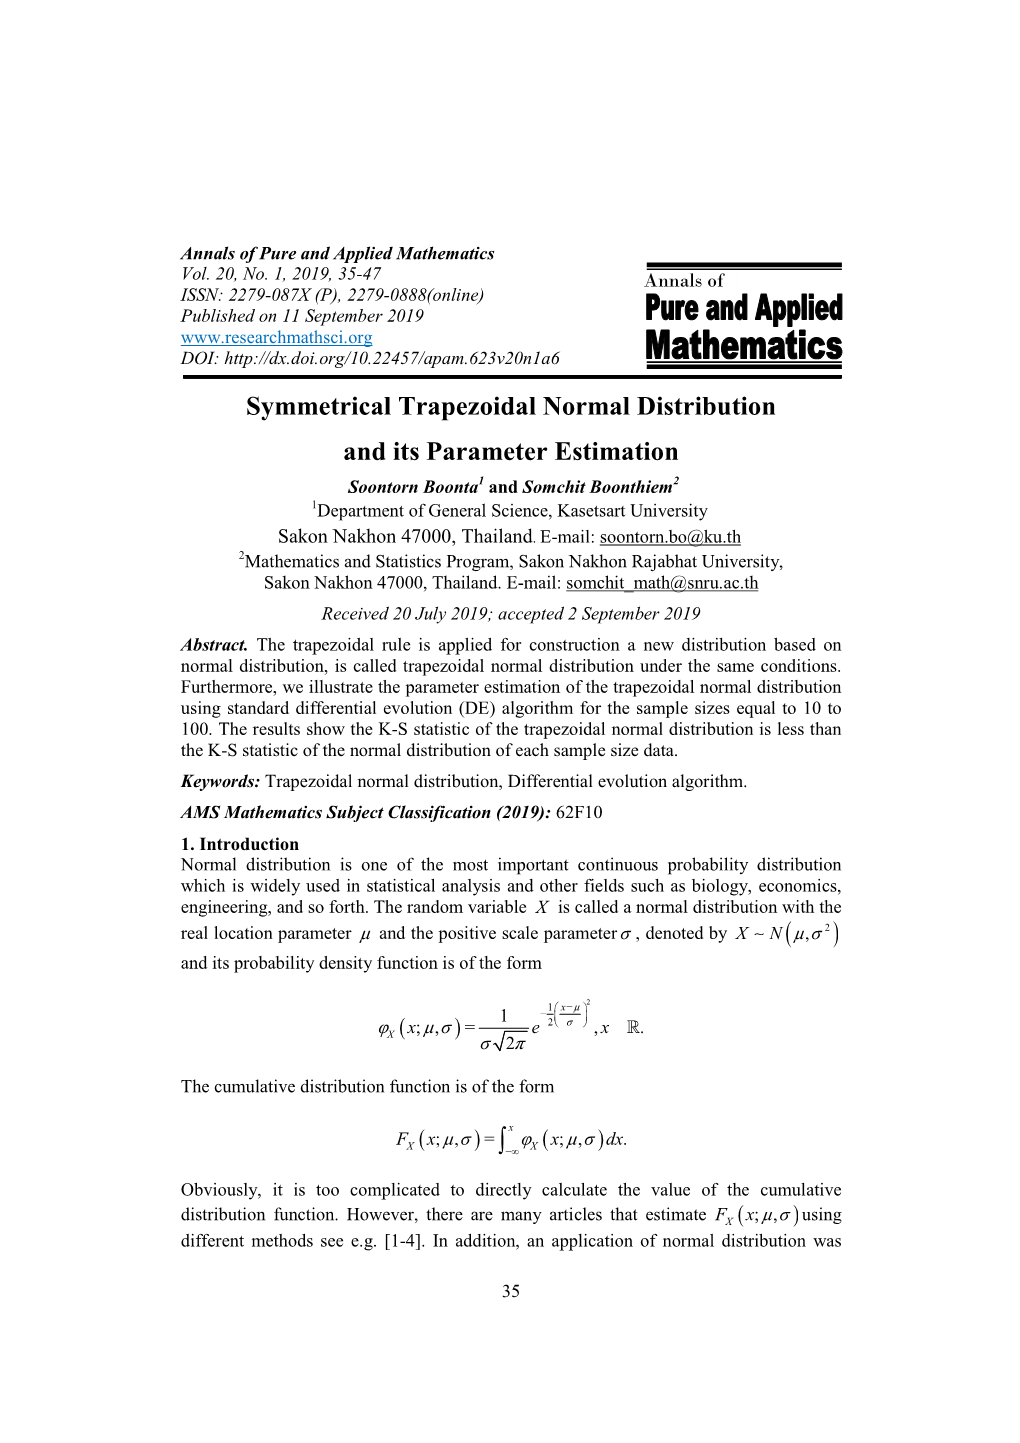 Symmetrical Trapezoidal Normal Distribution